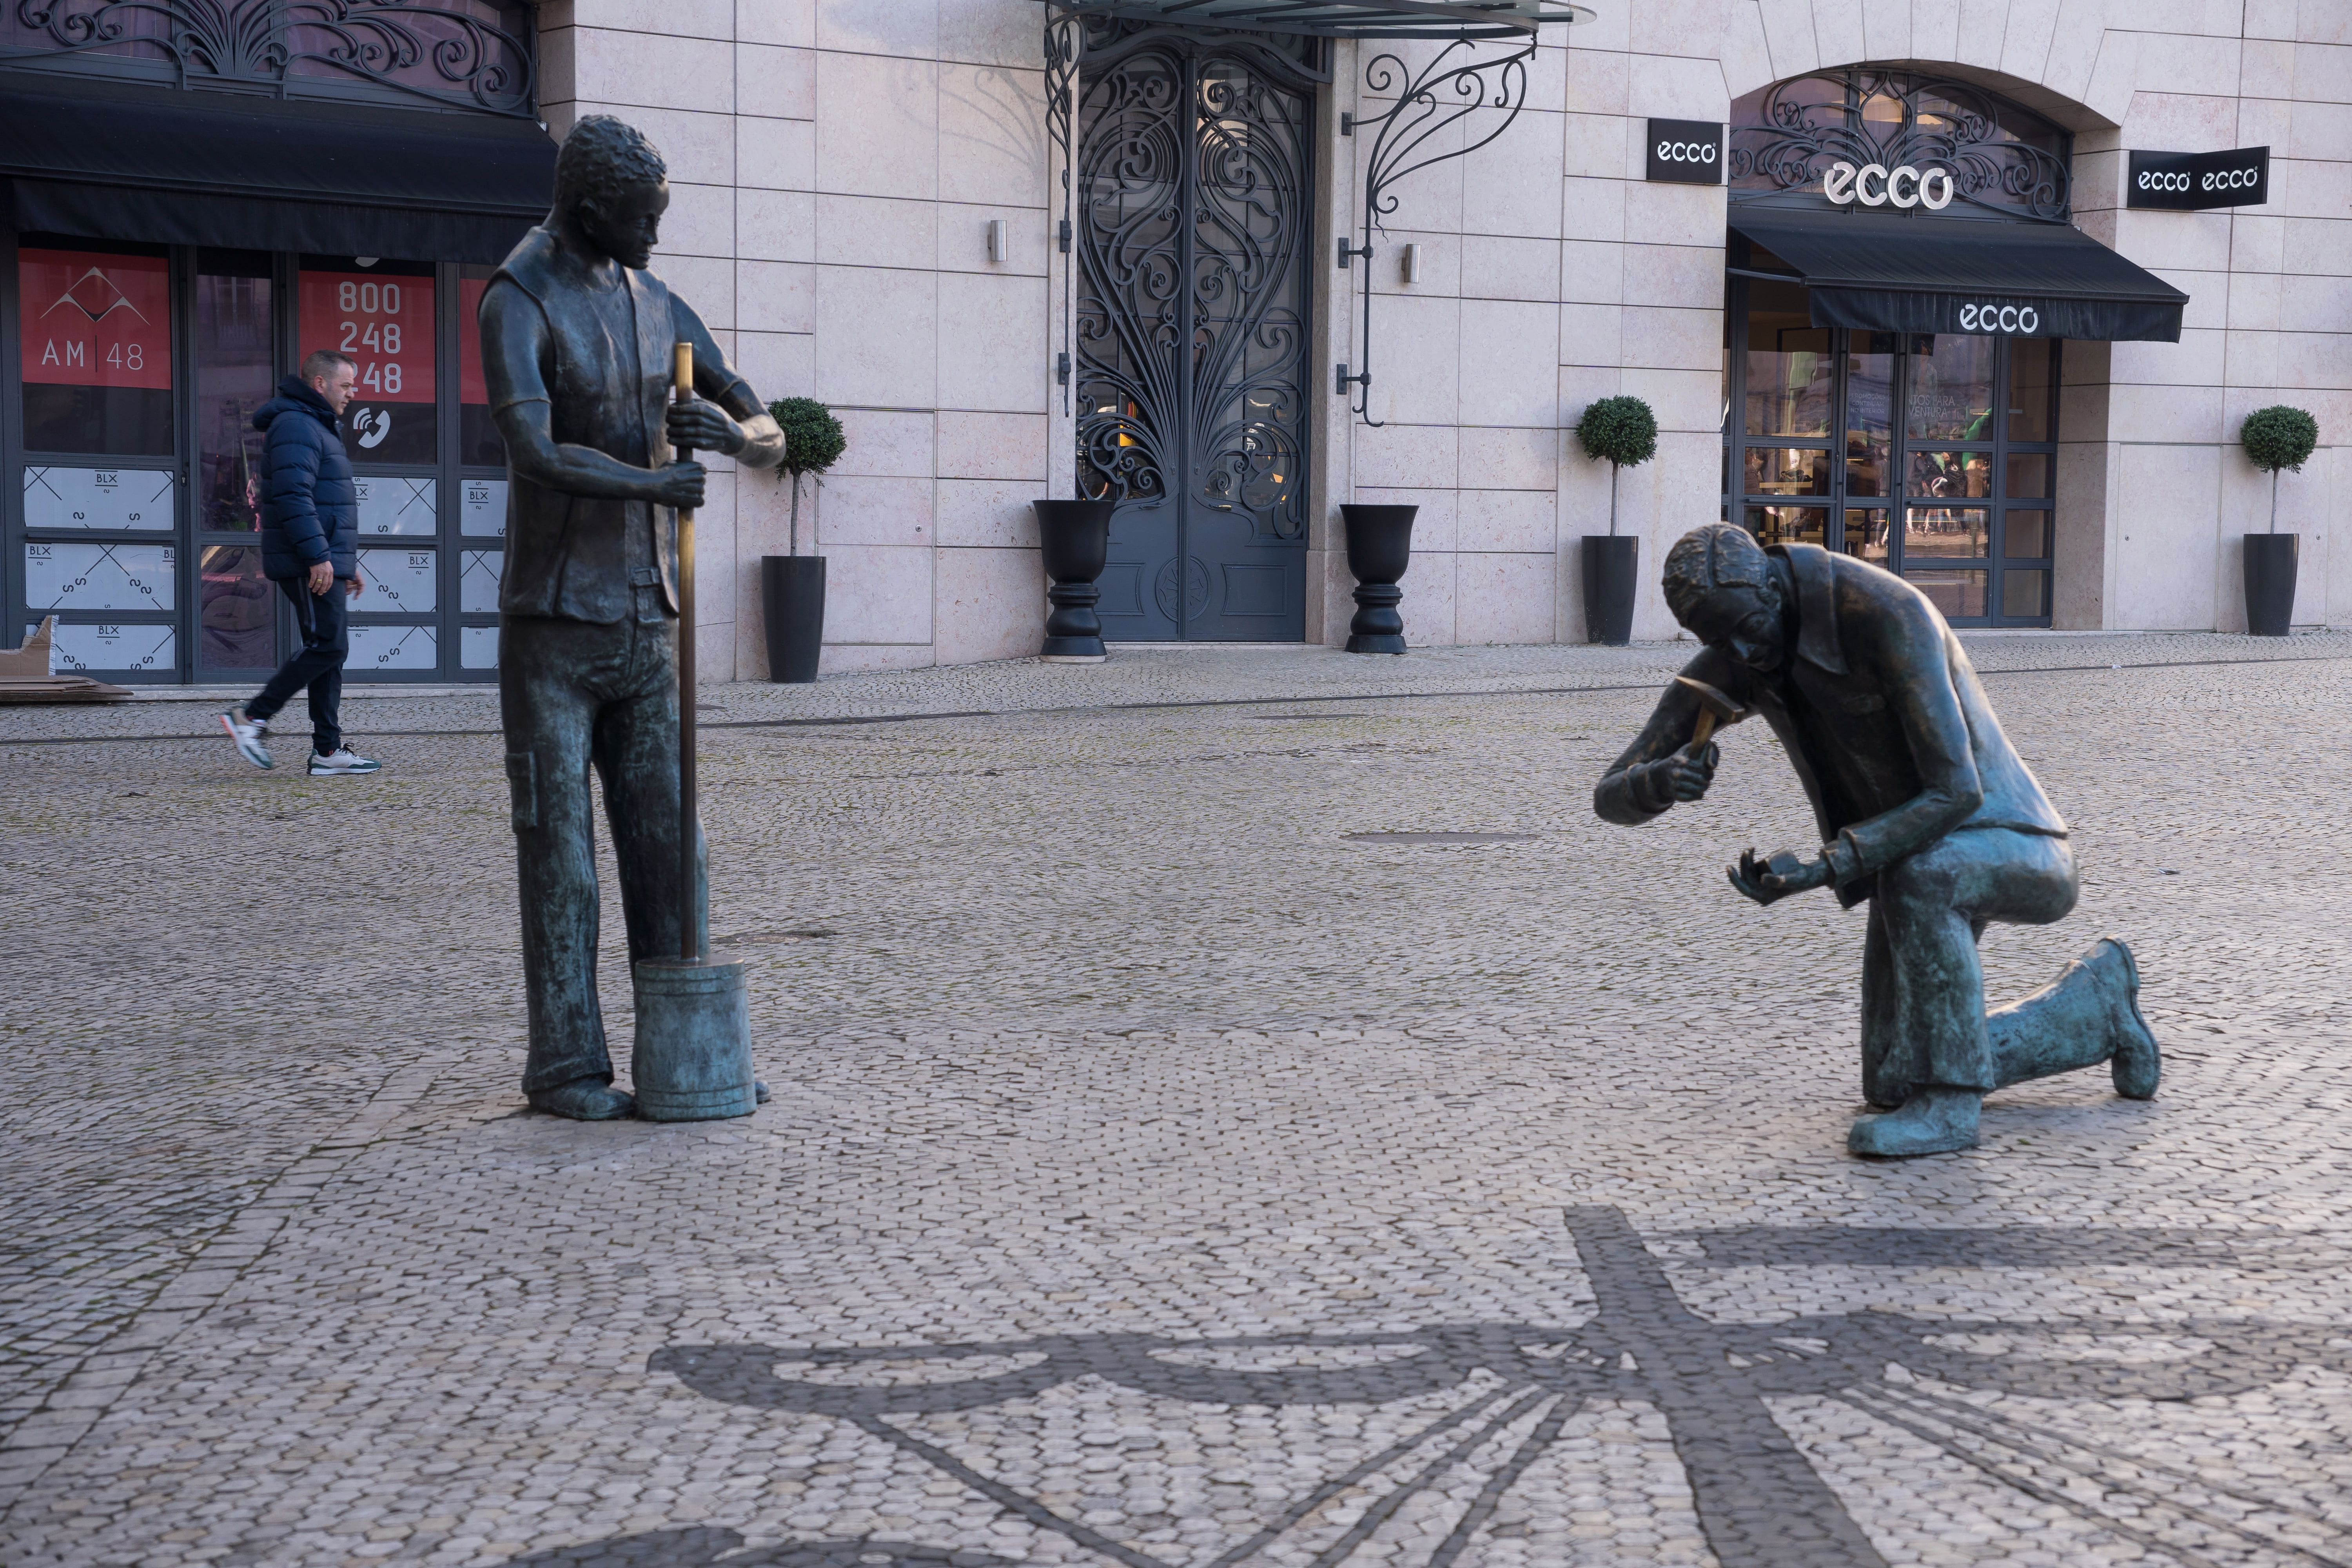 Monumento ao calceteiro, Lisboa